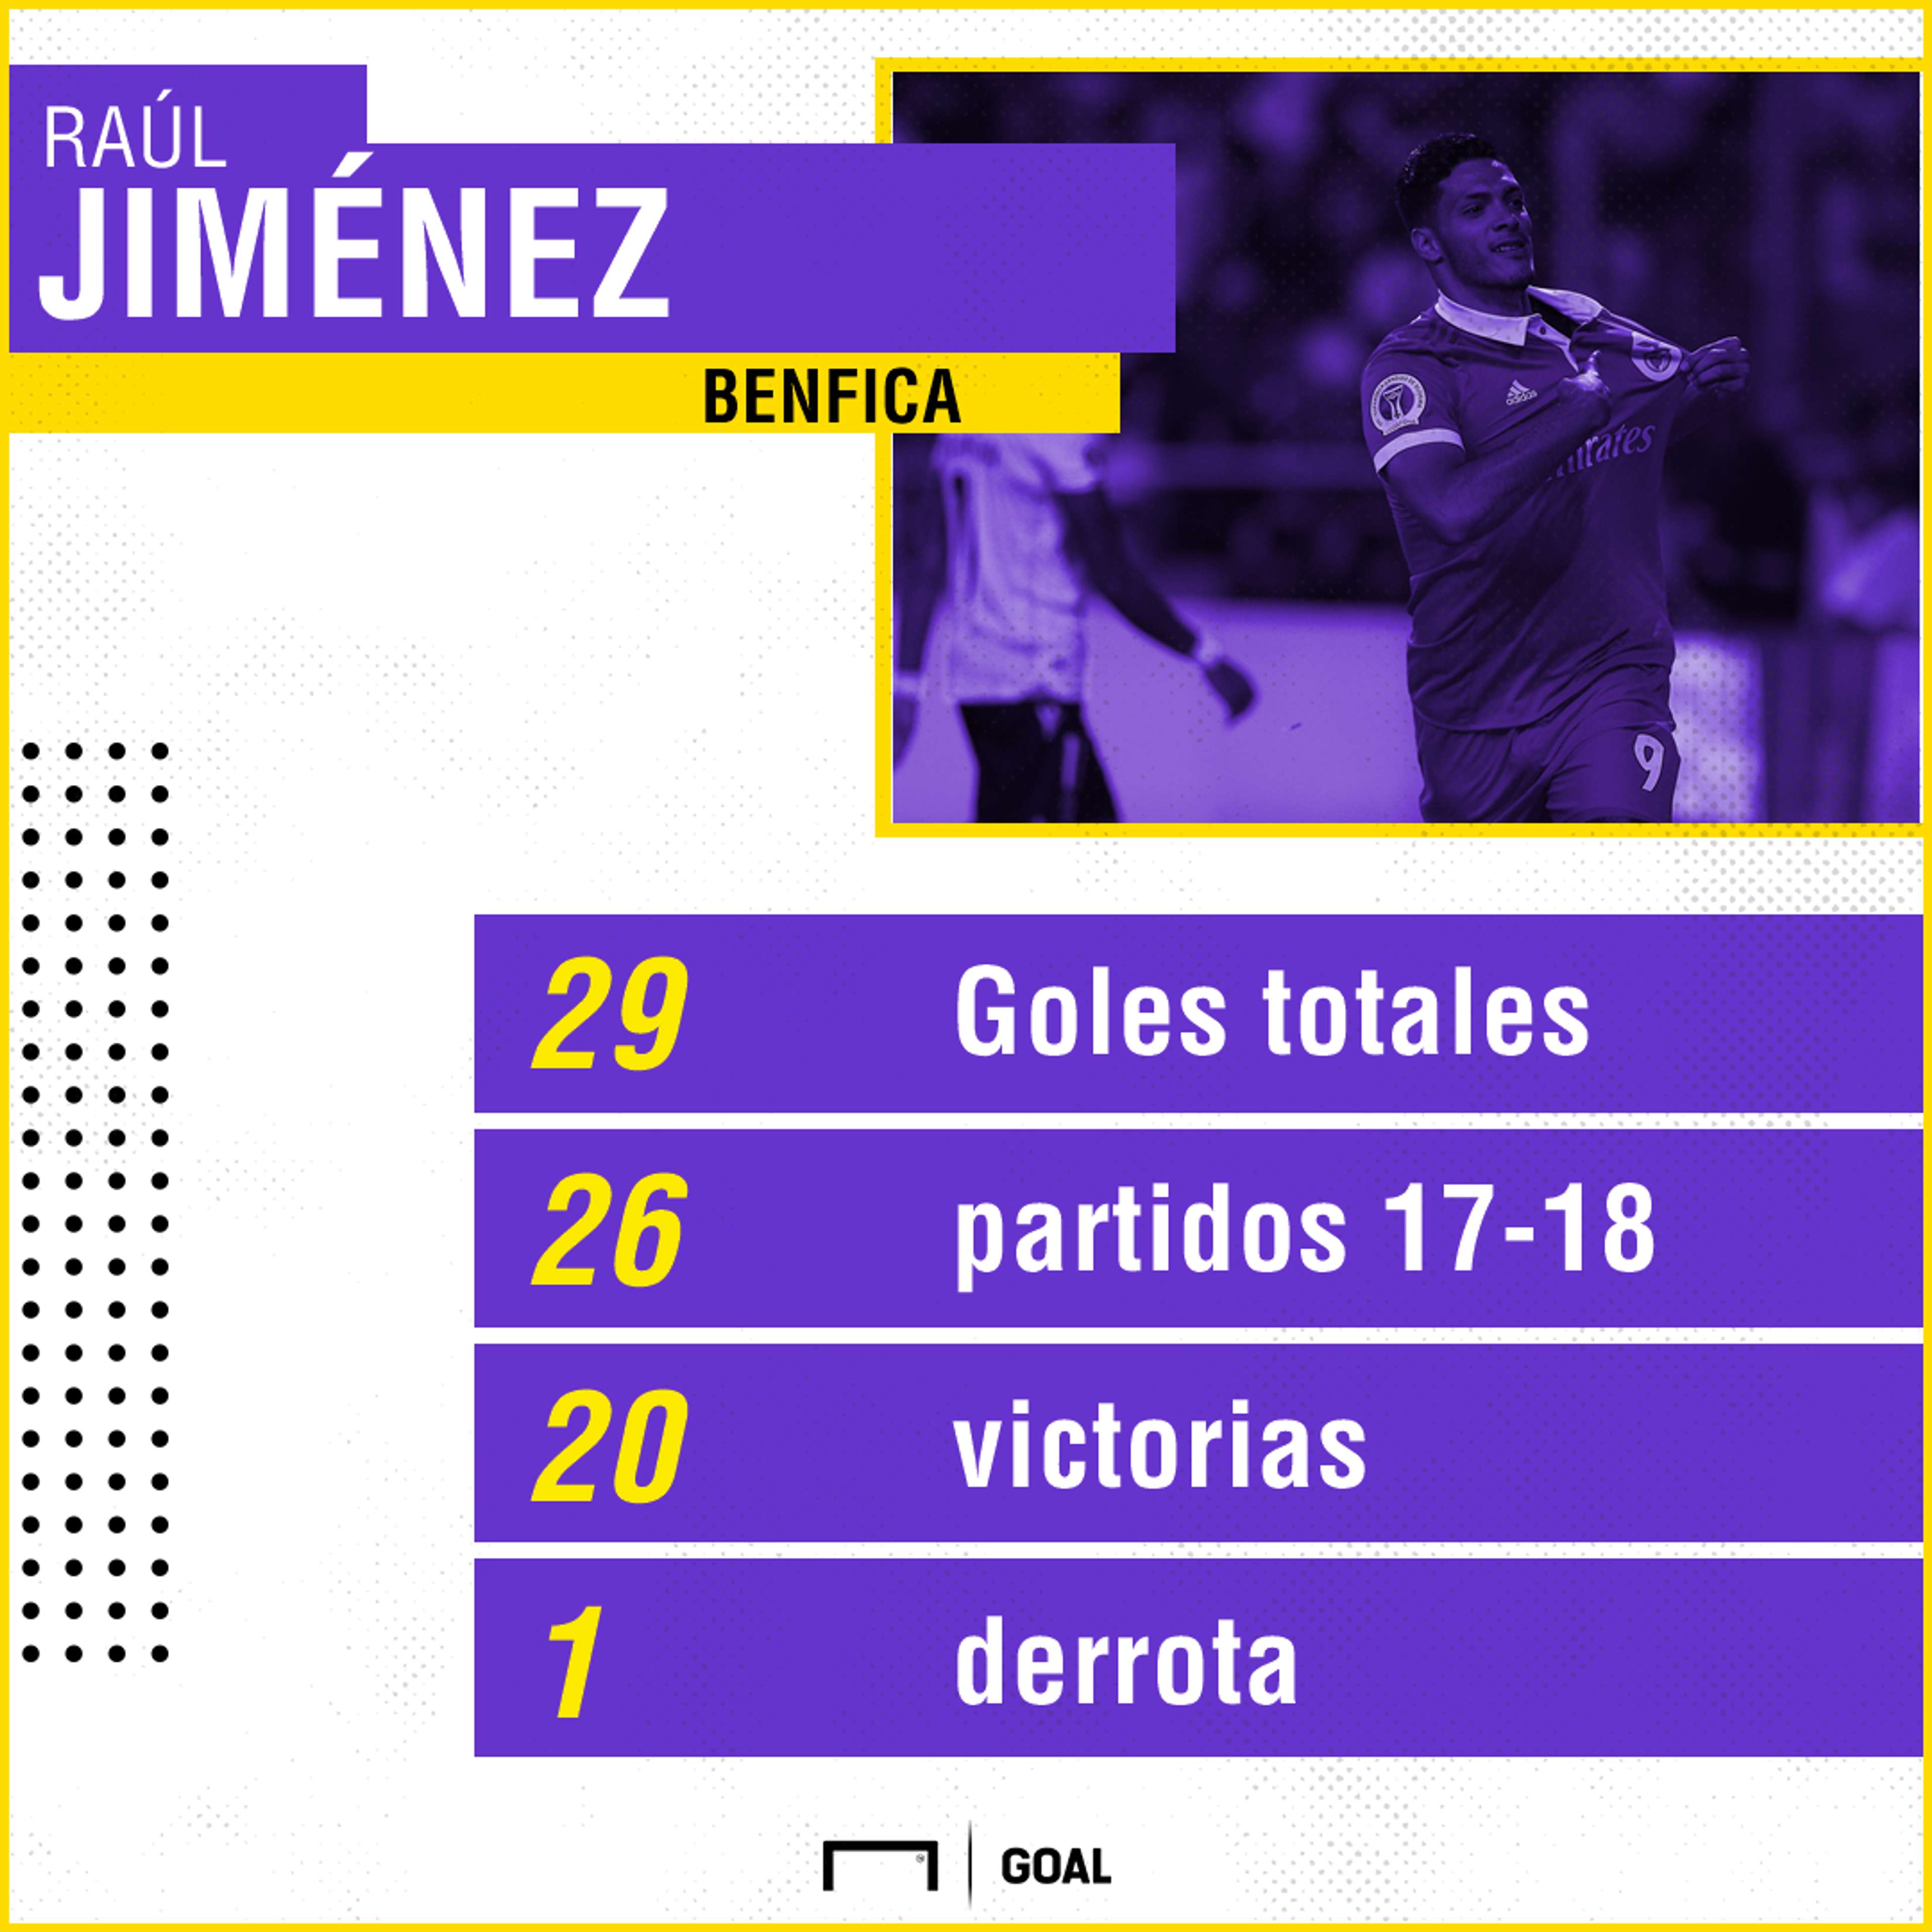 Raúl Jiménez stats